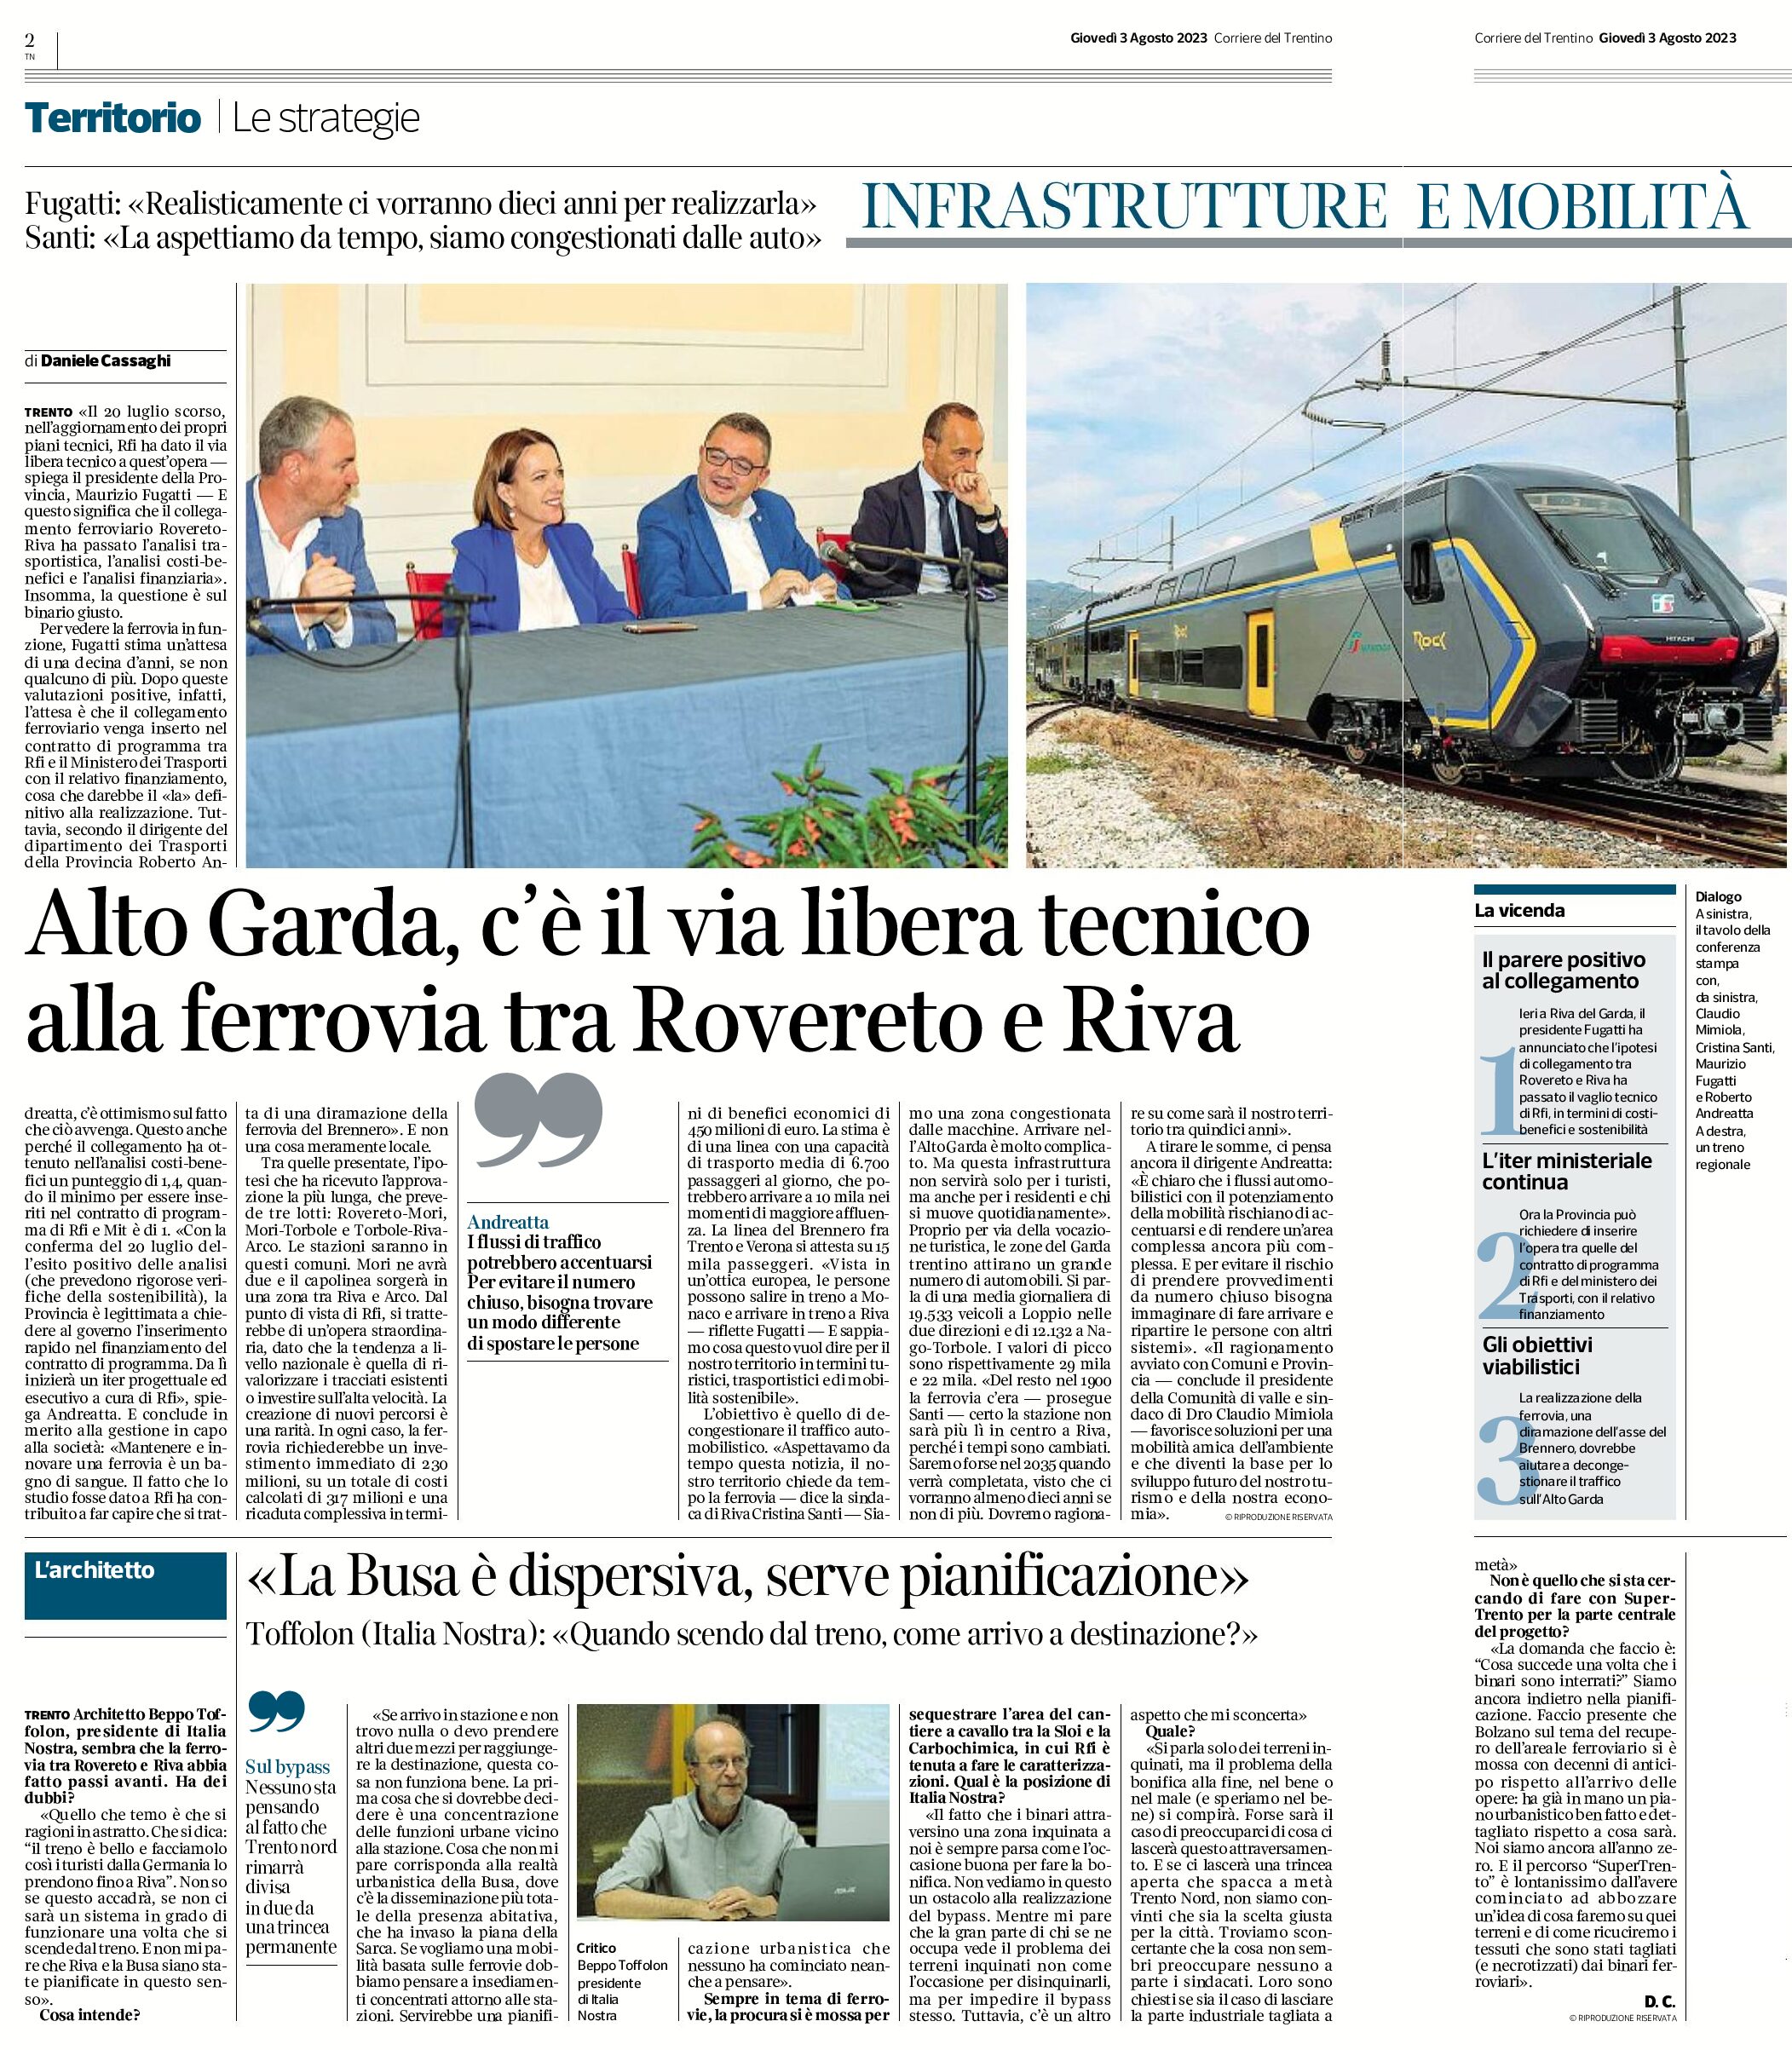 Ferrovia Rovereto-Riva: serve la pianificazione